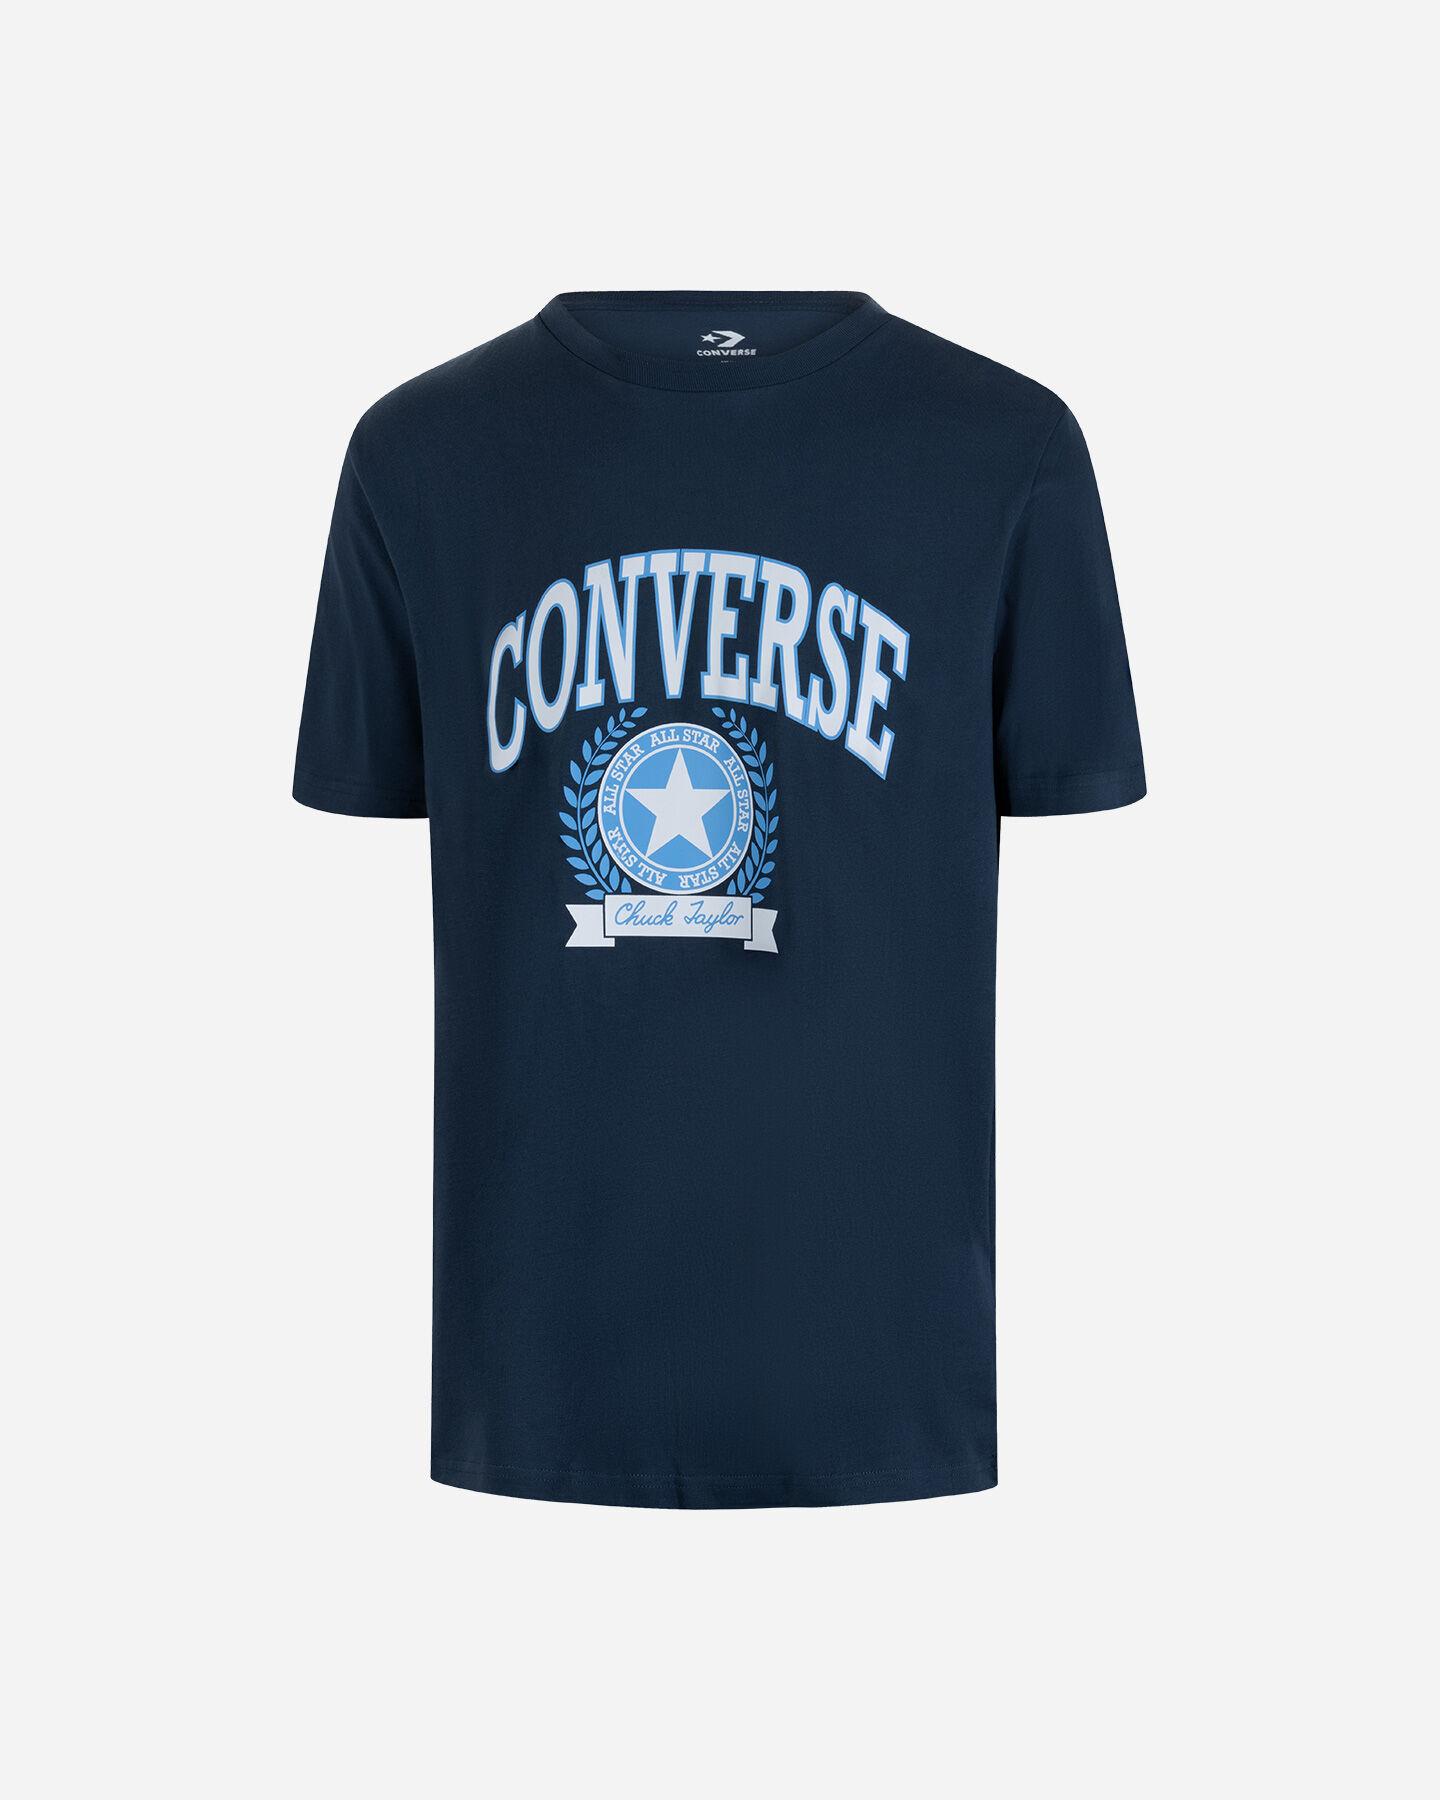  T-Shirt CONVERSE CHUCK RETRO COLLEGIATE M S5604643|410|S scatto 0